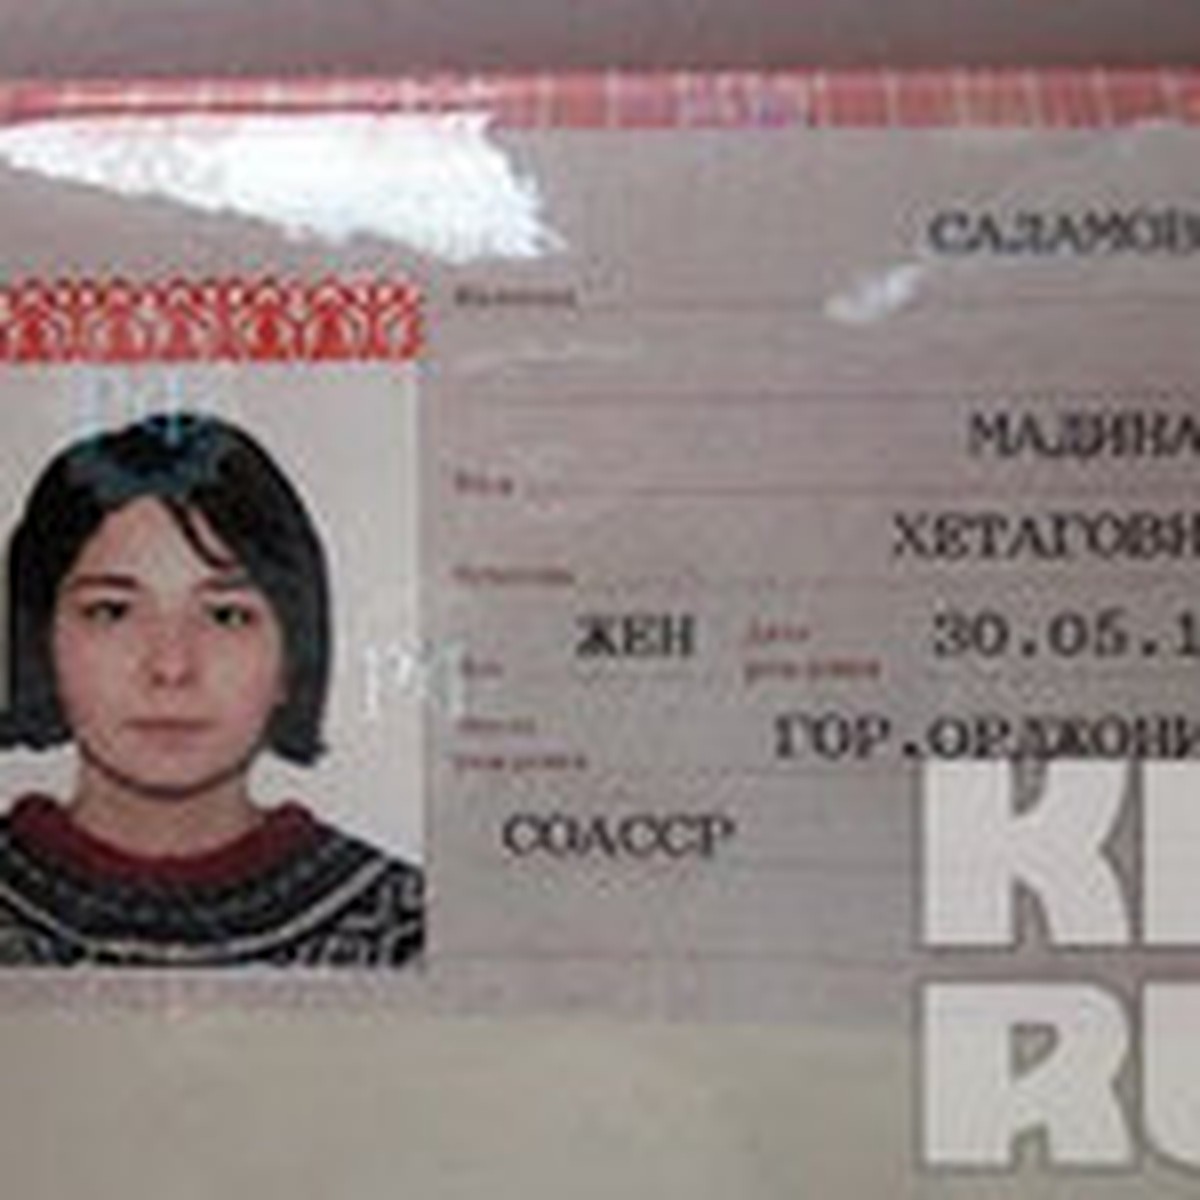 Дата рождения в паспорте